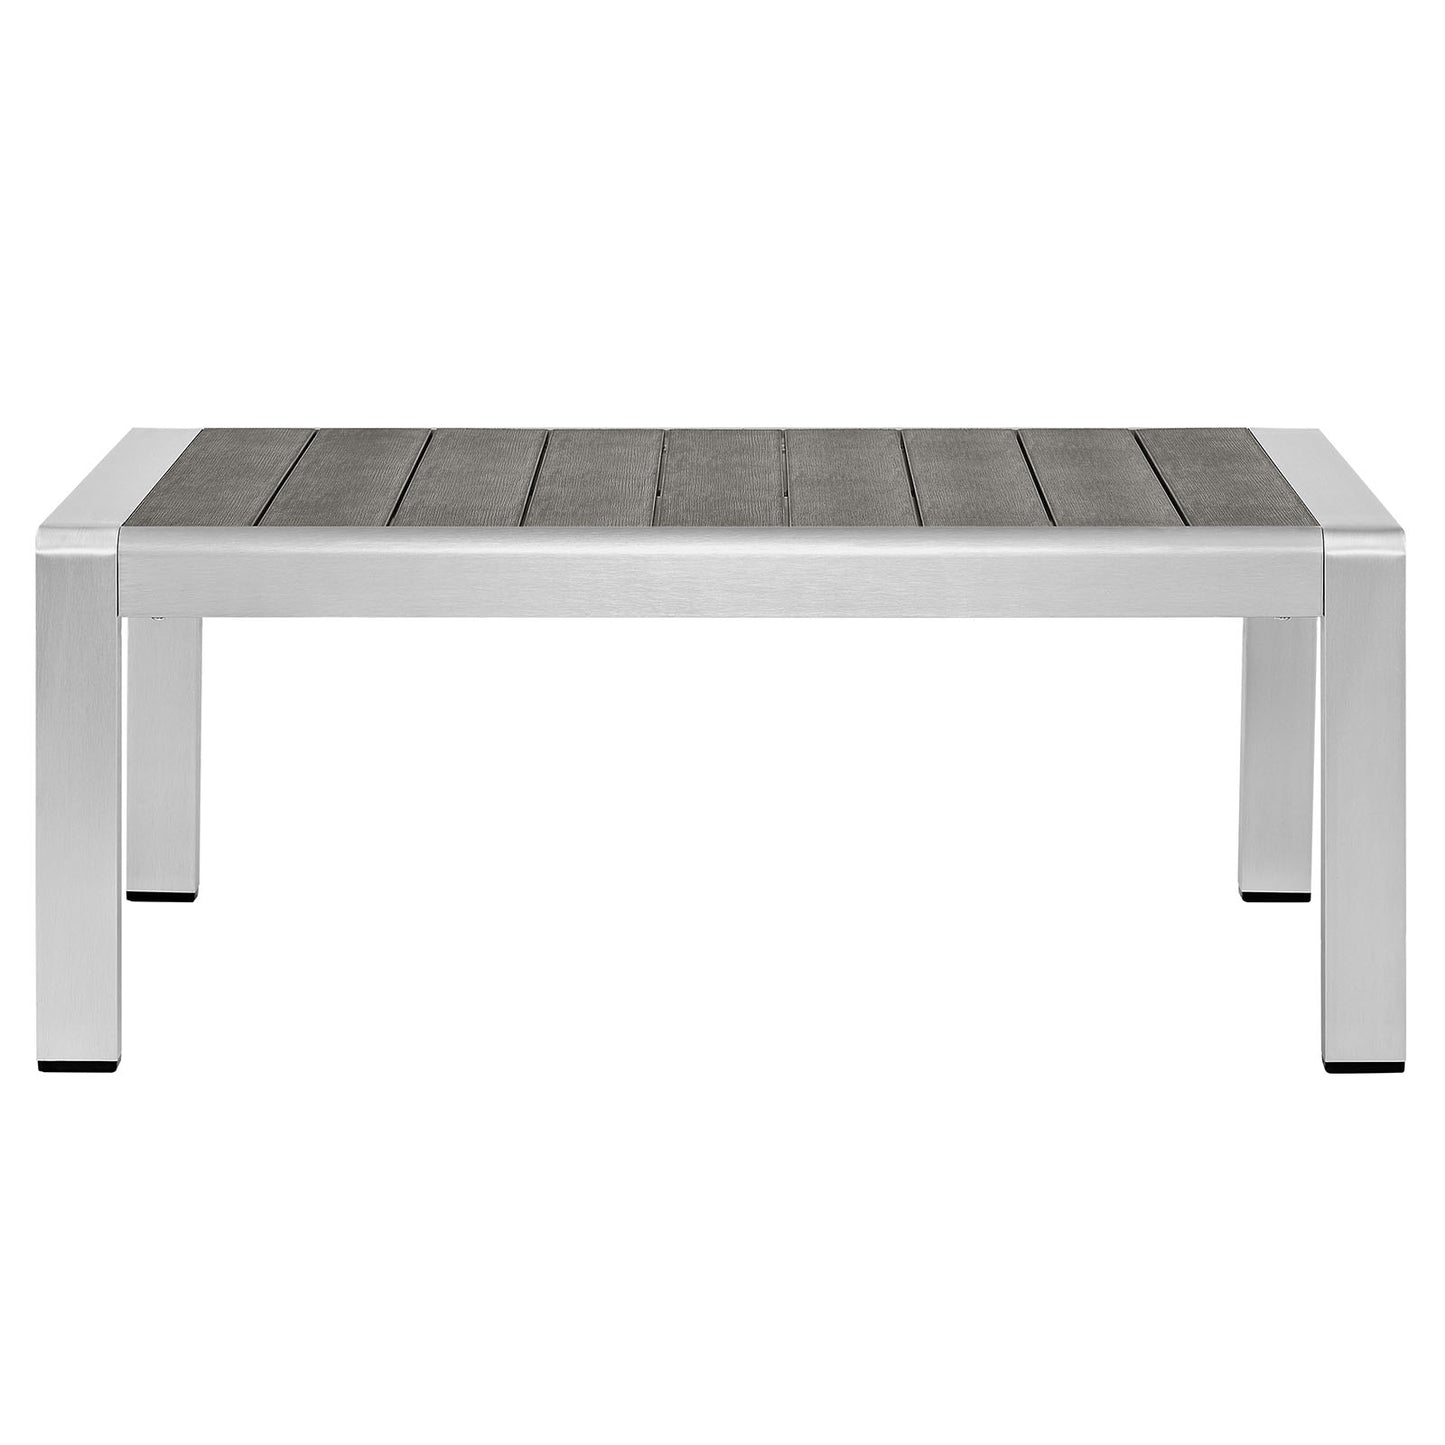 Shore Outdoor Patio Aluminum Coffee Table Silver Gray EEI-2268-SLV-GRY